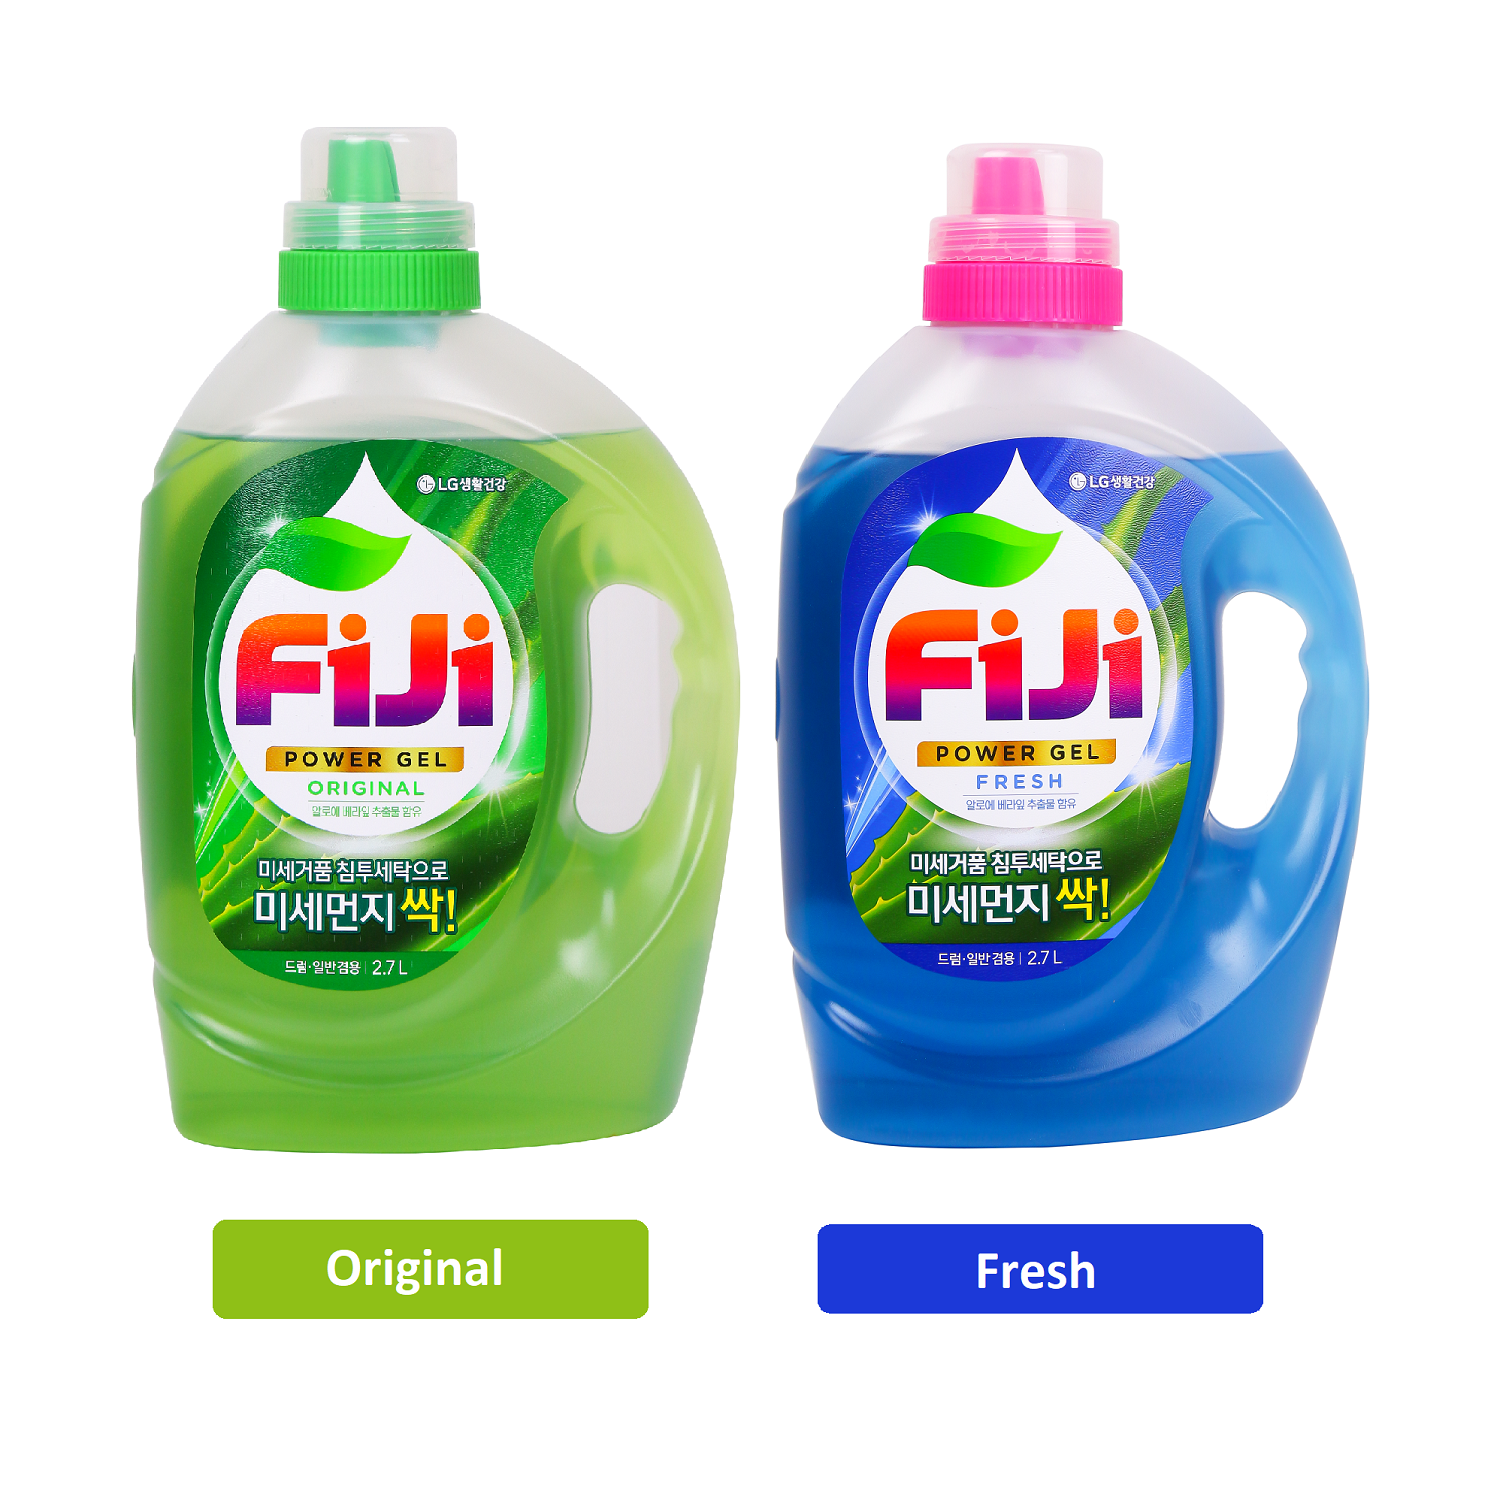 Nước giặt FIJI Power Gel Original làm sạch vượt trội, hương truyền thống 2.7L